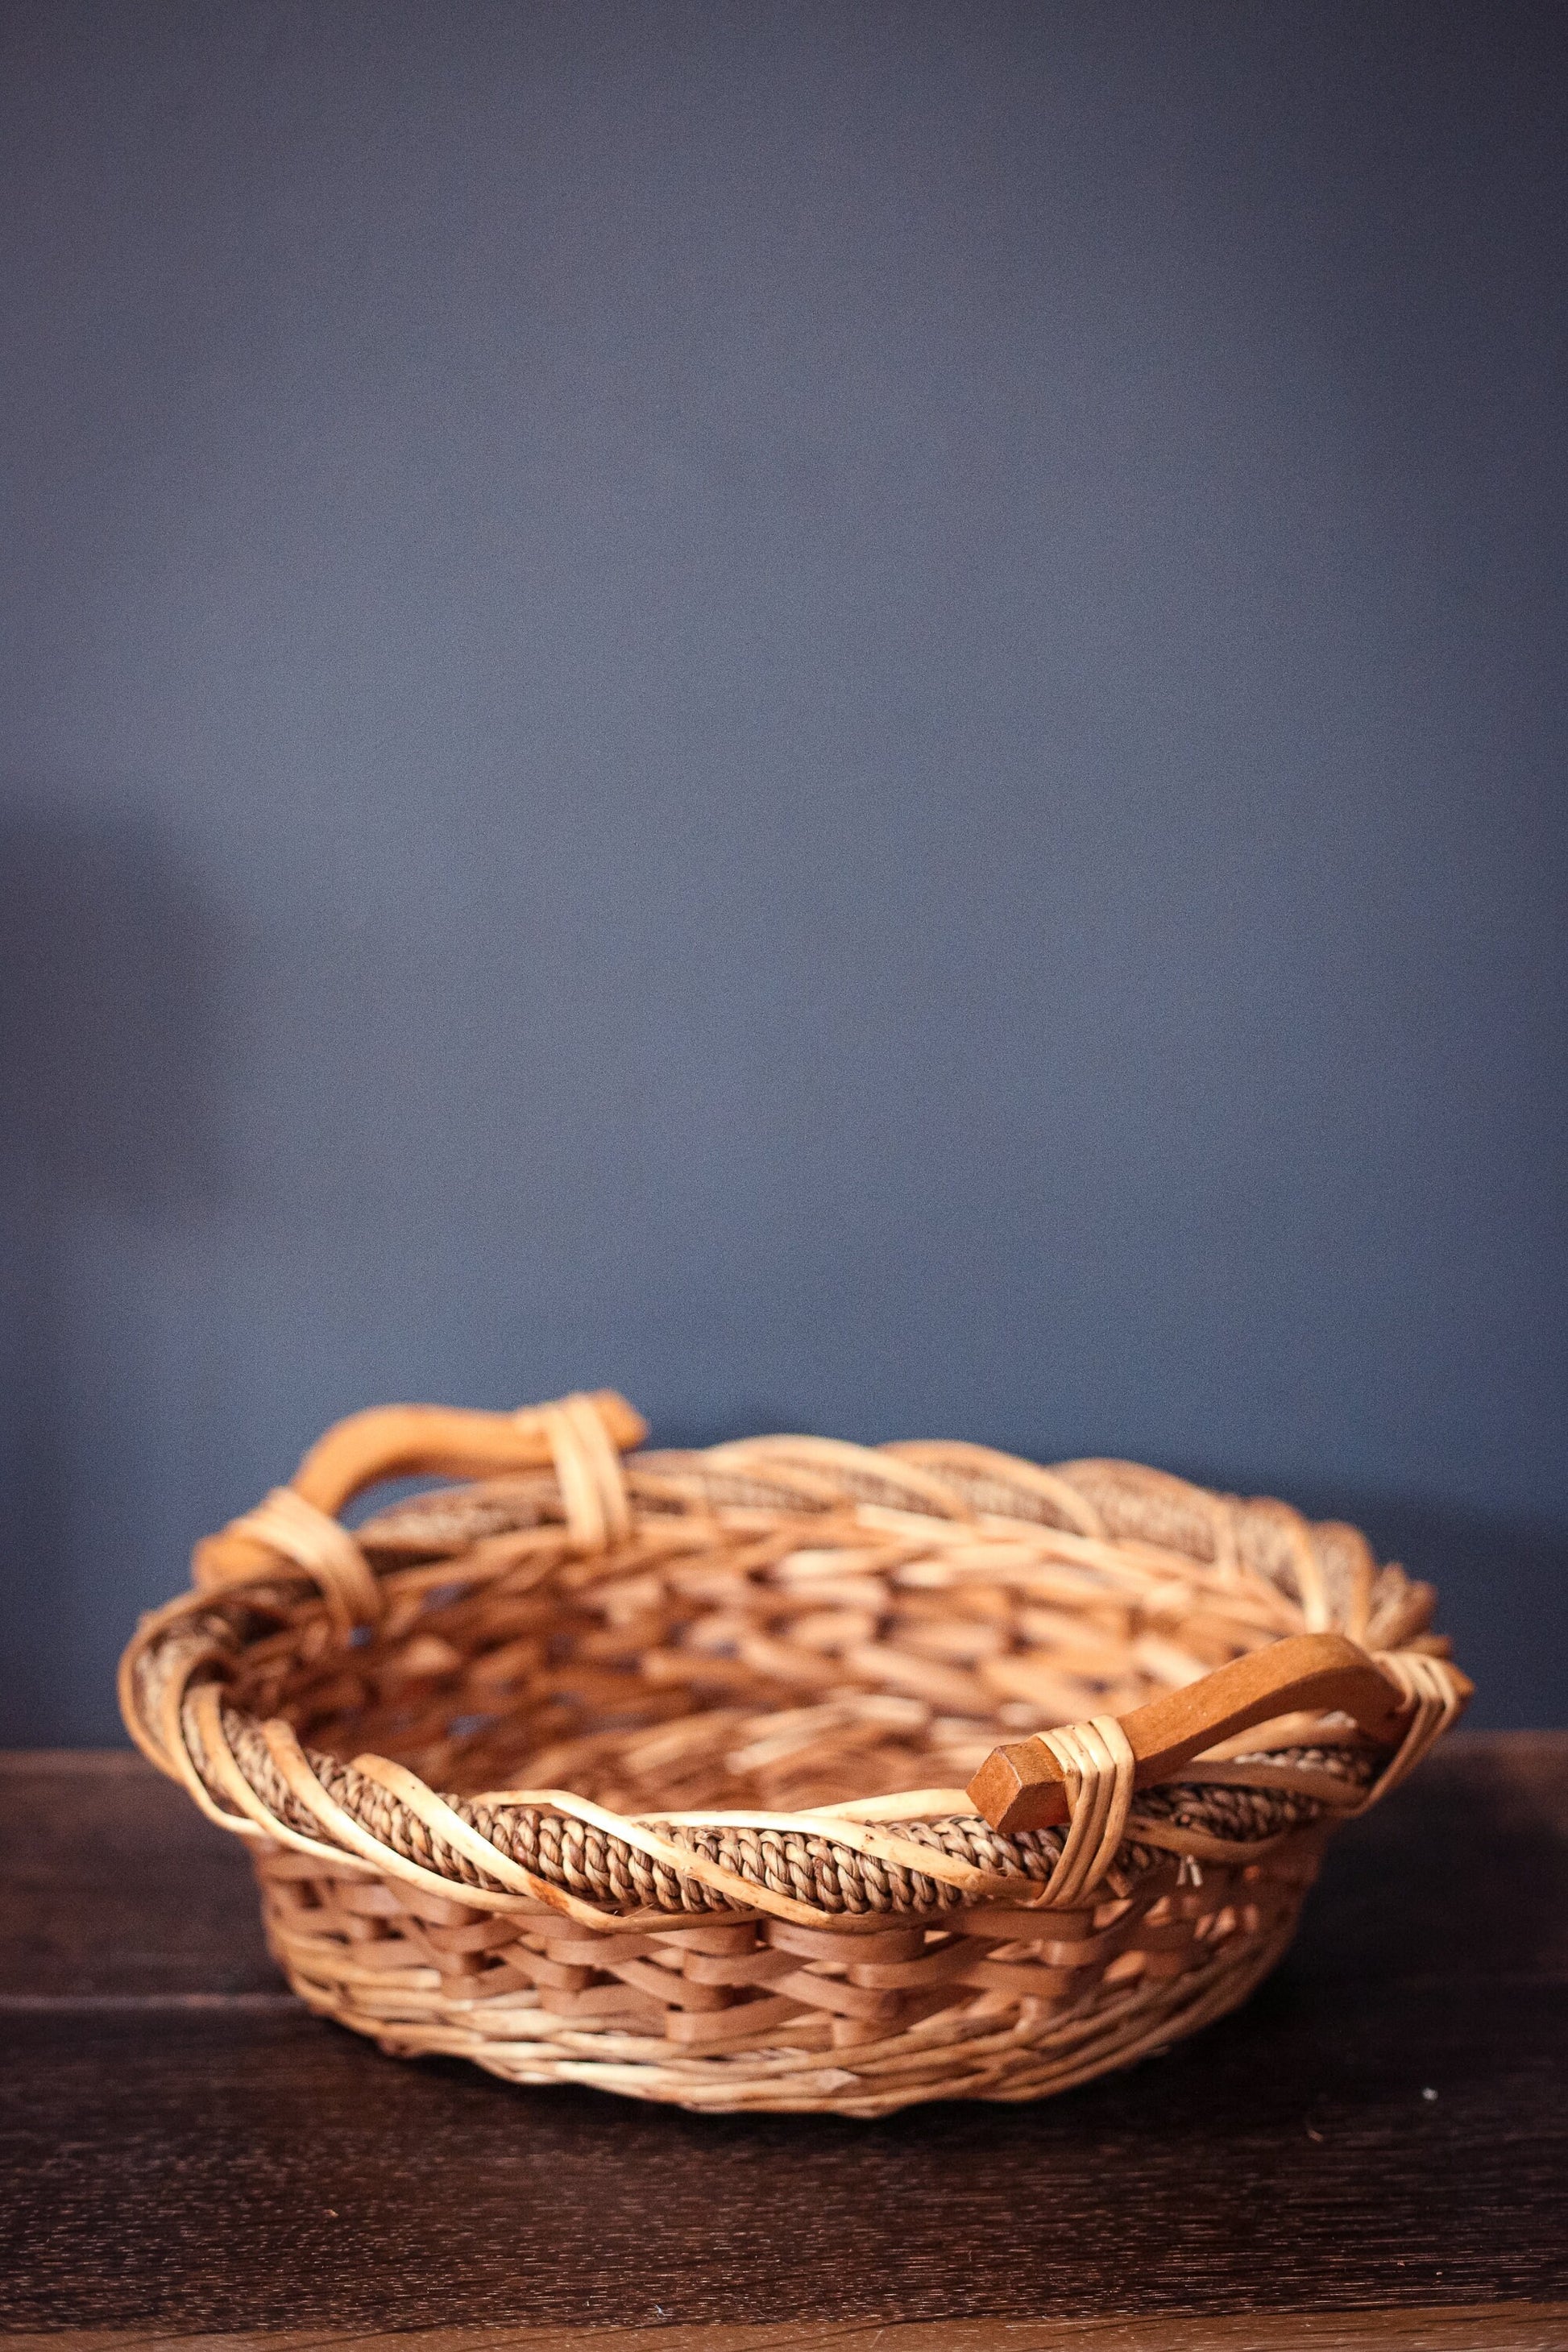 Oval Flat Bottom Decorative Basket with Spiral Rope Edge & Wood Handles - Vintage Blonde Toned Basket